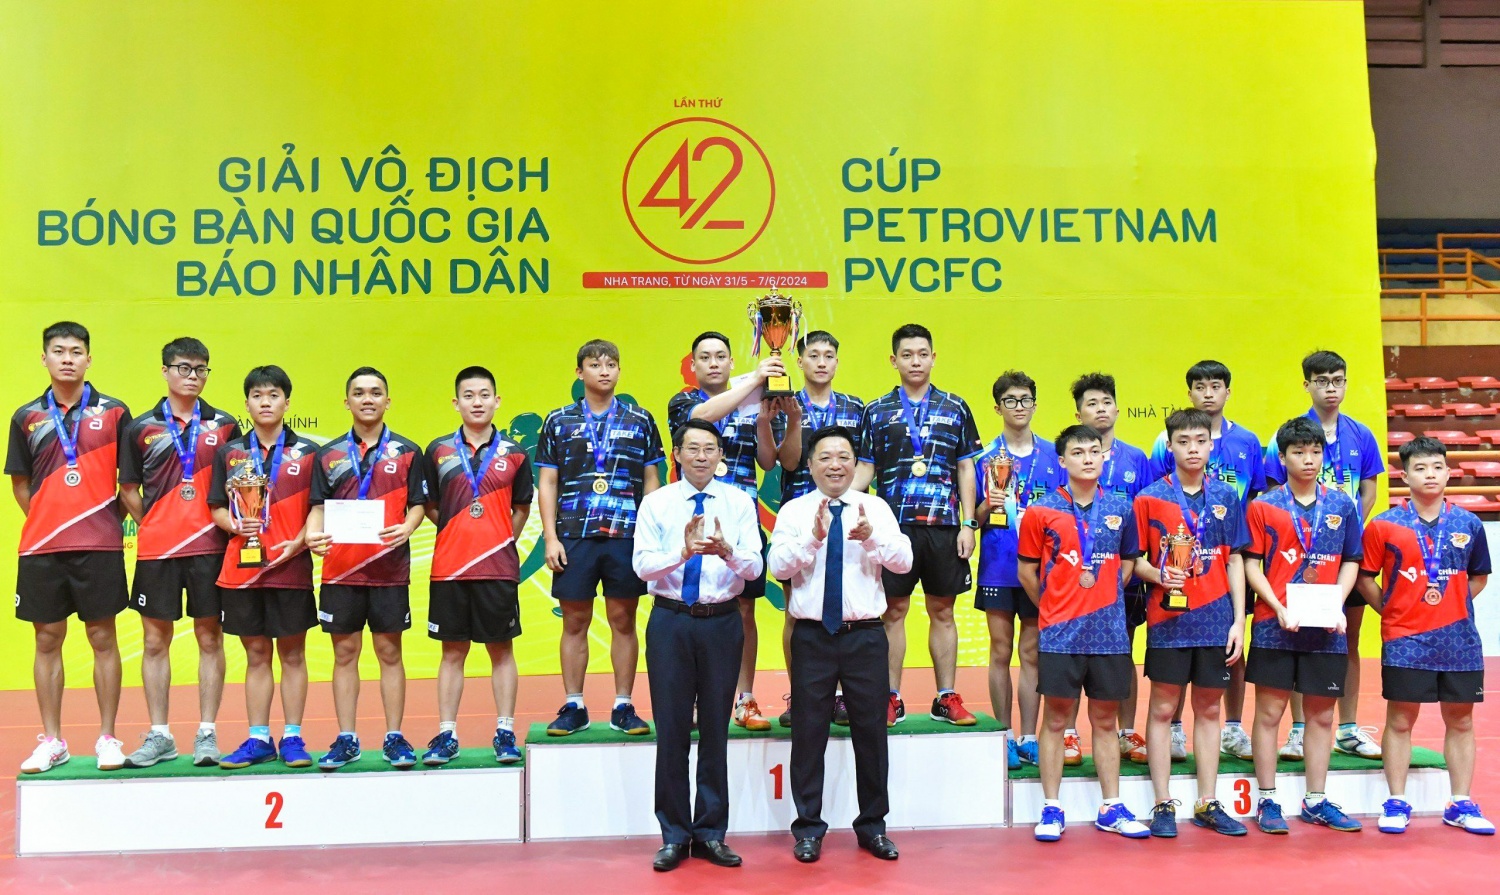 Giải vô địch bóng bàn quốc gia Báo Nhân Dân lần thứ 42 chính thức khép lại